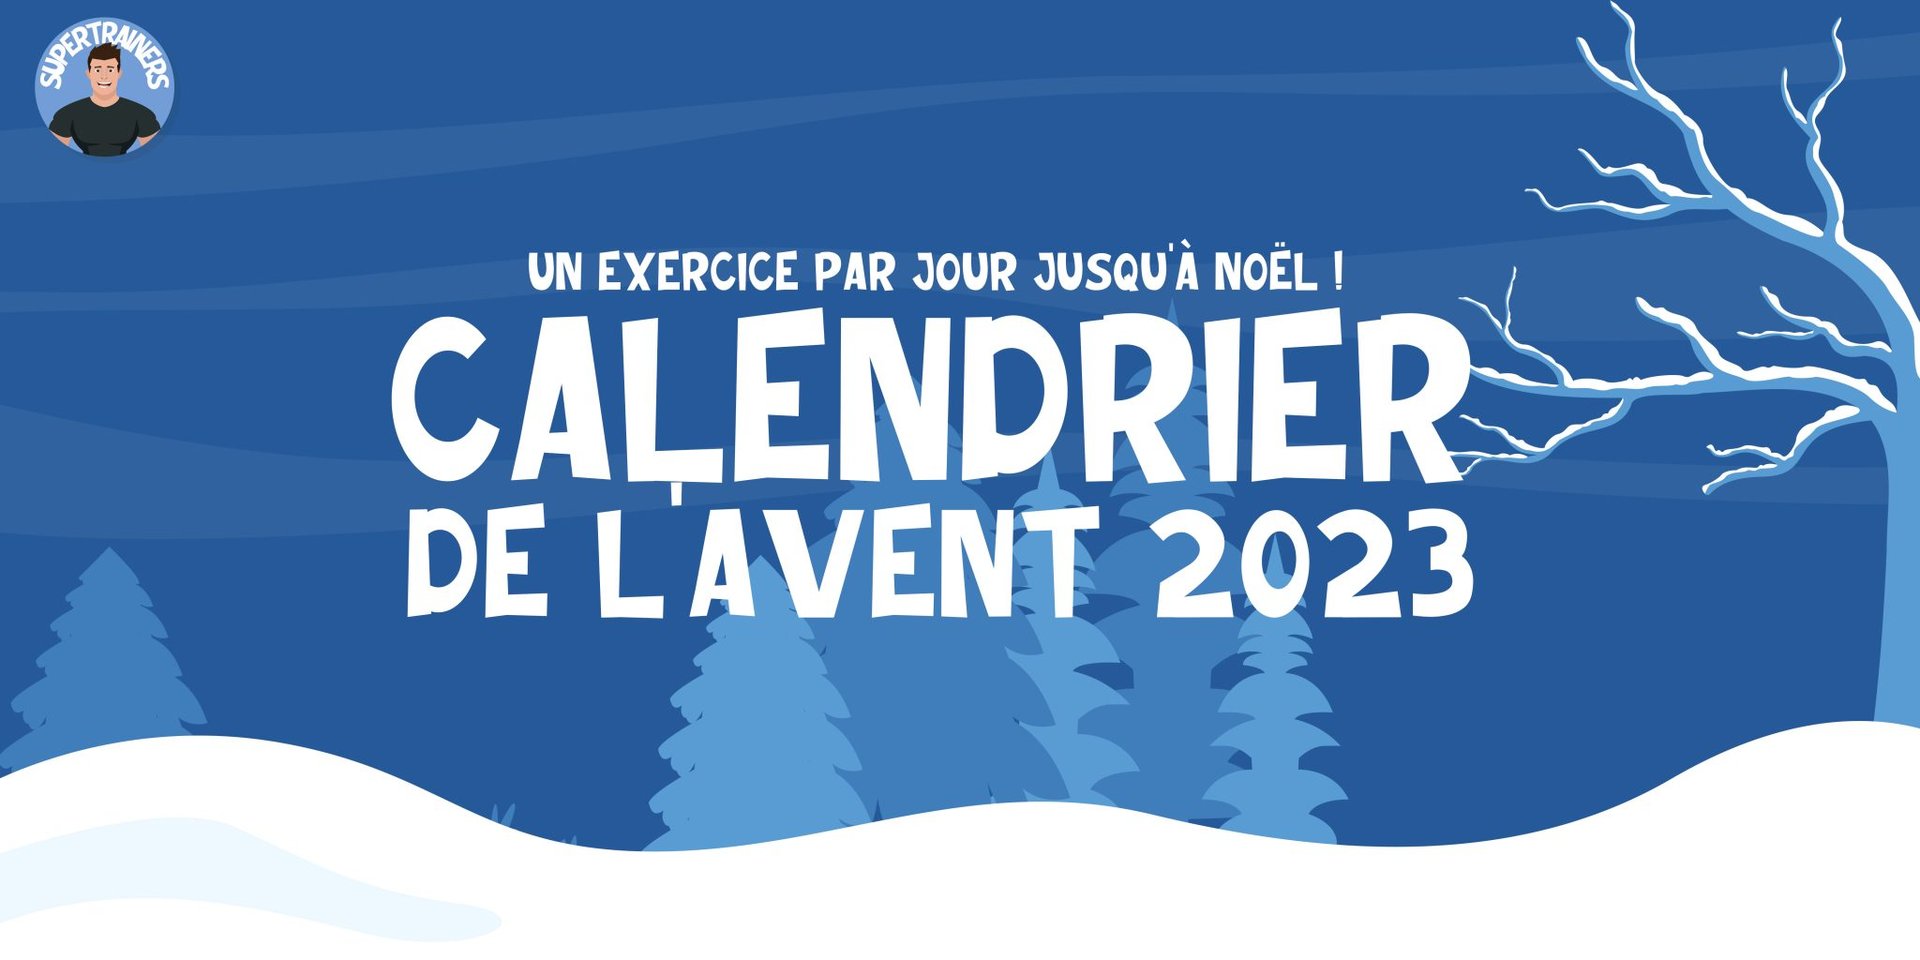 CALENDRIER DE L'AVENT 2023 !